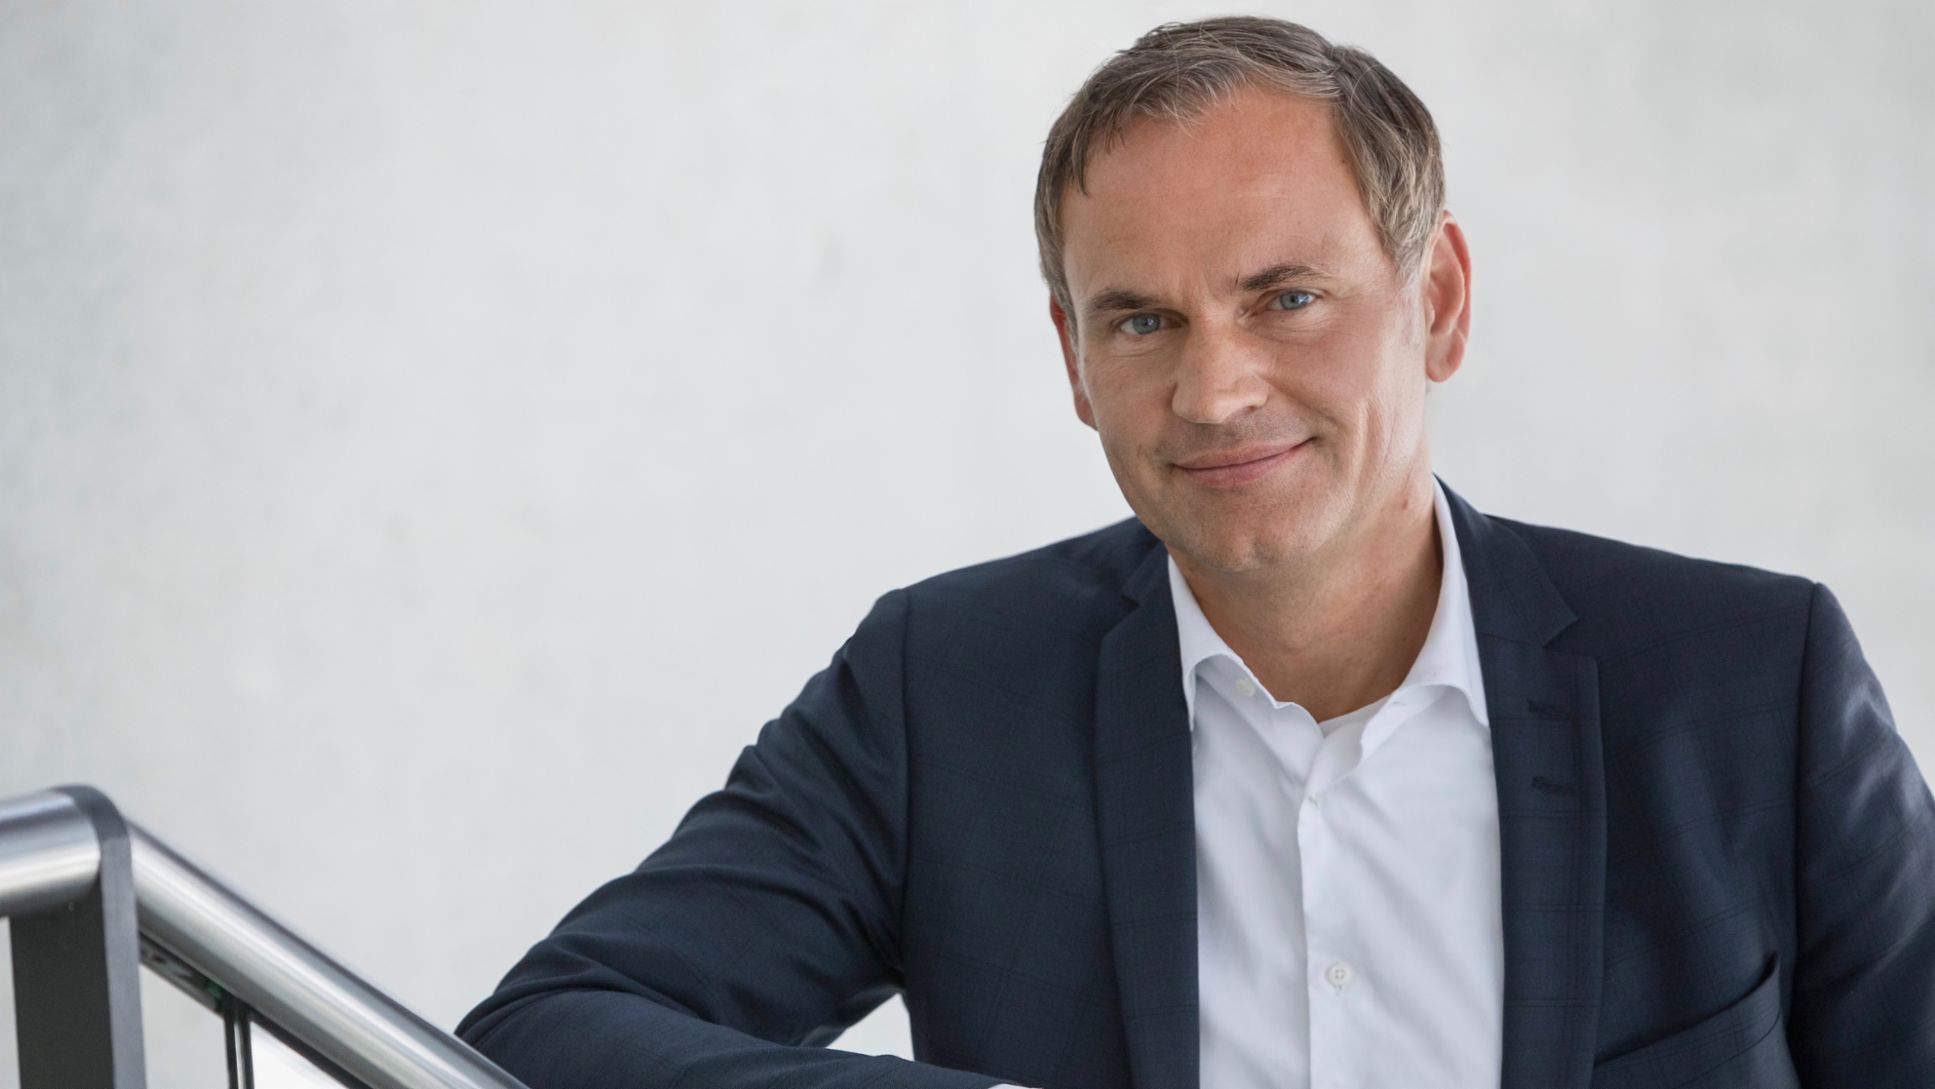 Oliver Blume, presidente del Consejo Directivo de Porsche AG, 2020, Porsche AG